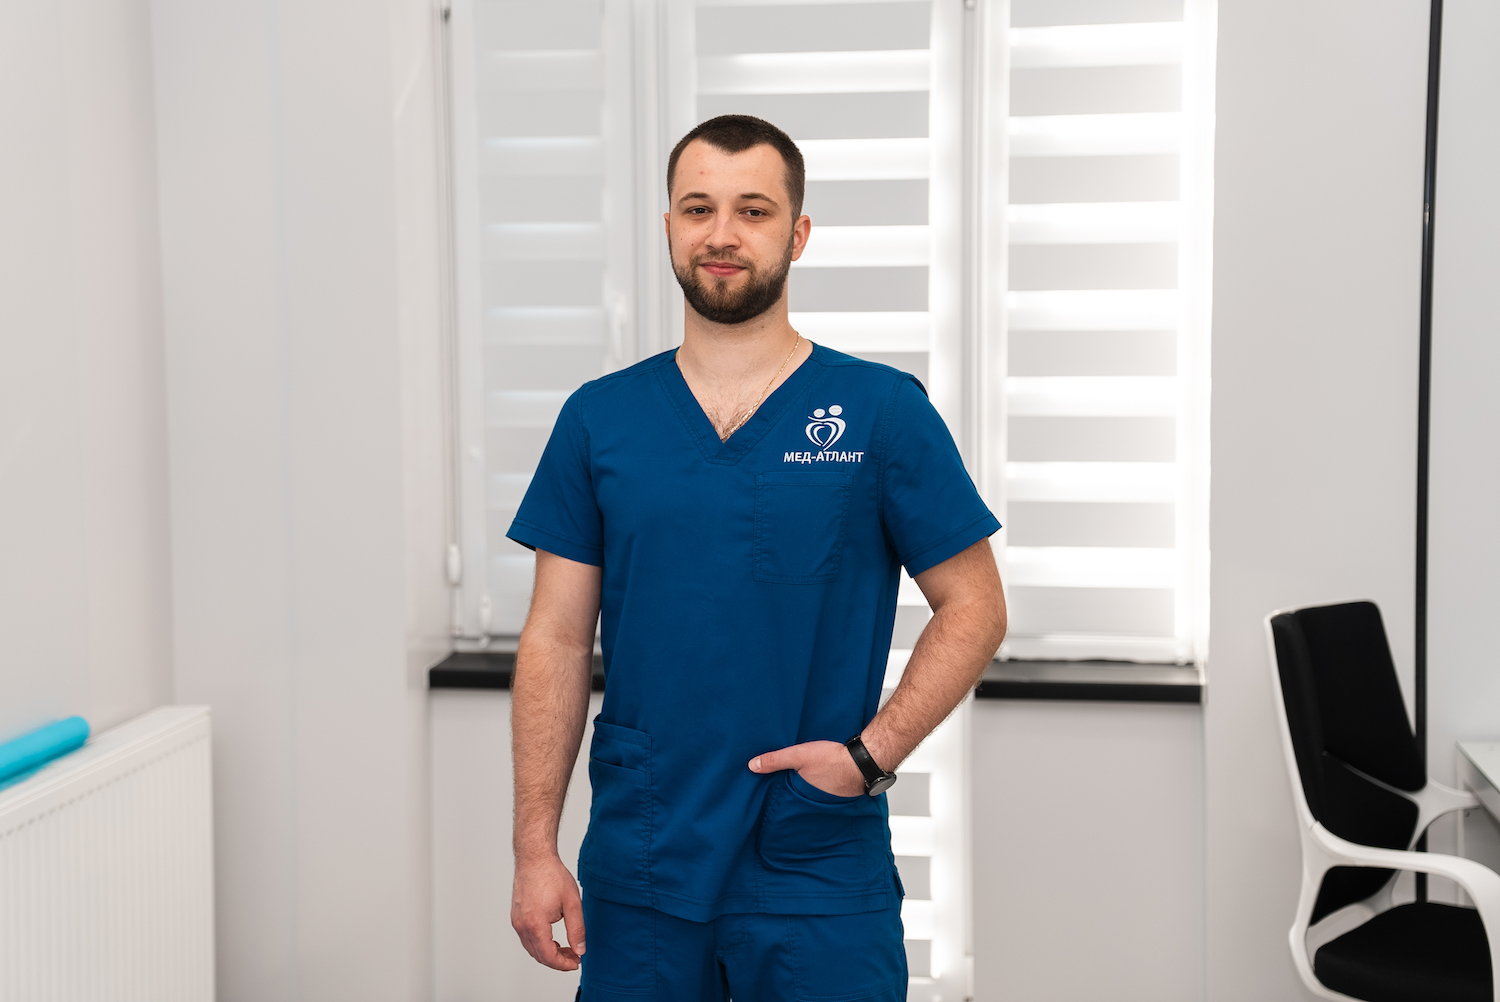 Лікування суглобів: про регенеративні методи розповідає франківський ортопед-травматолог Валентин Романюк (ФОТО)